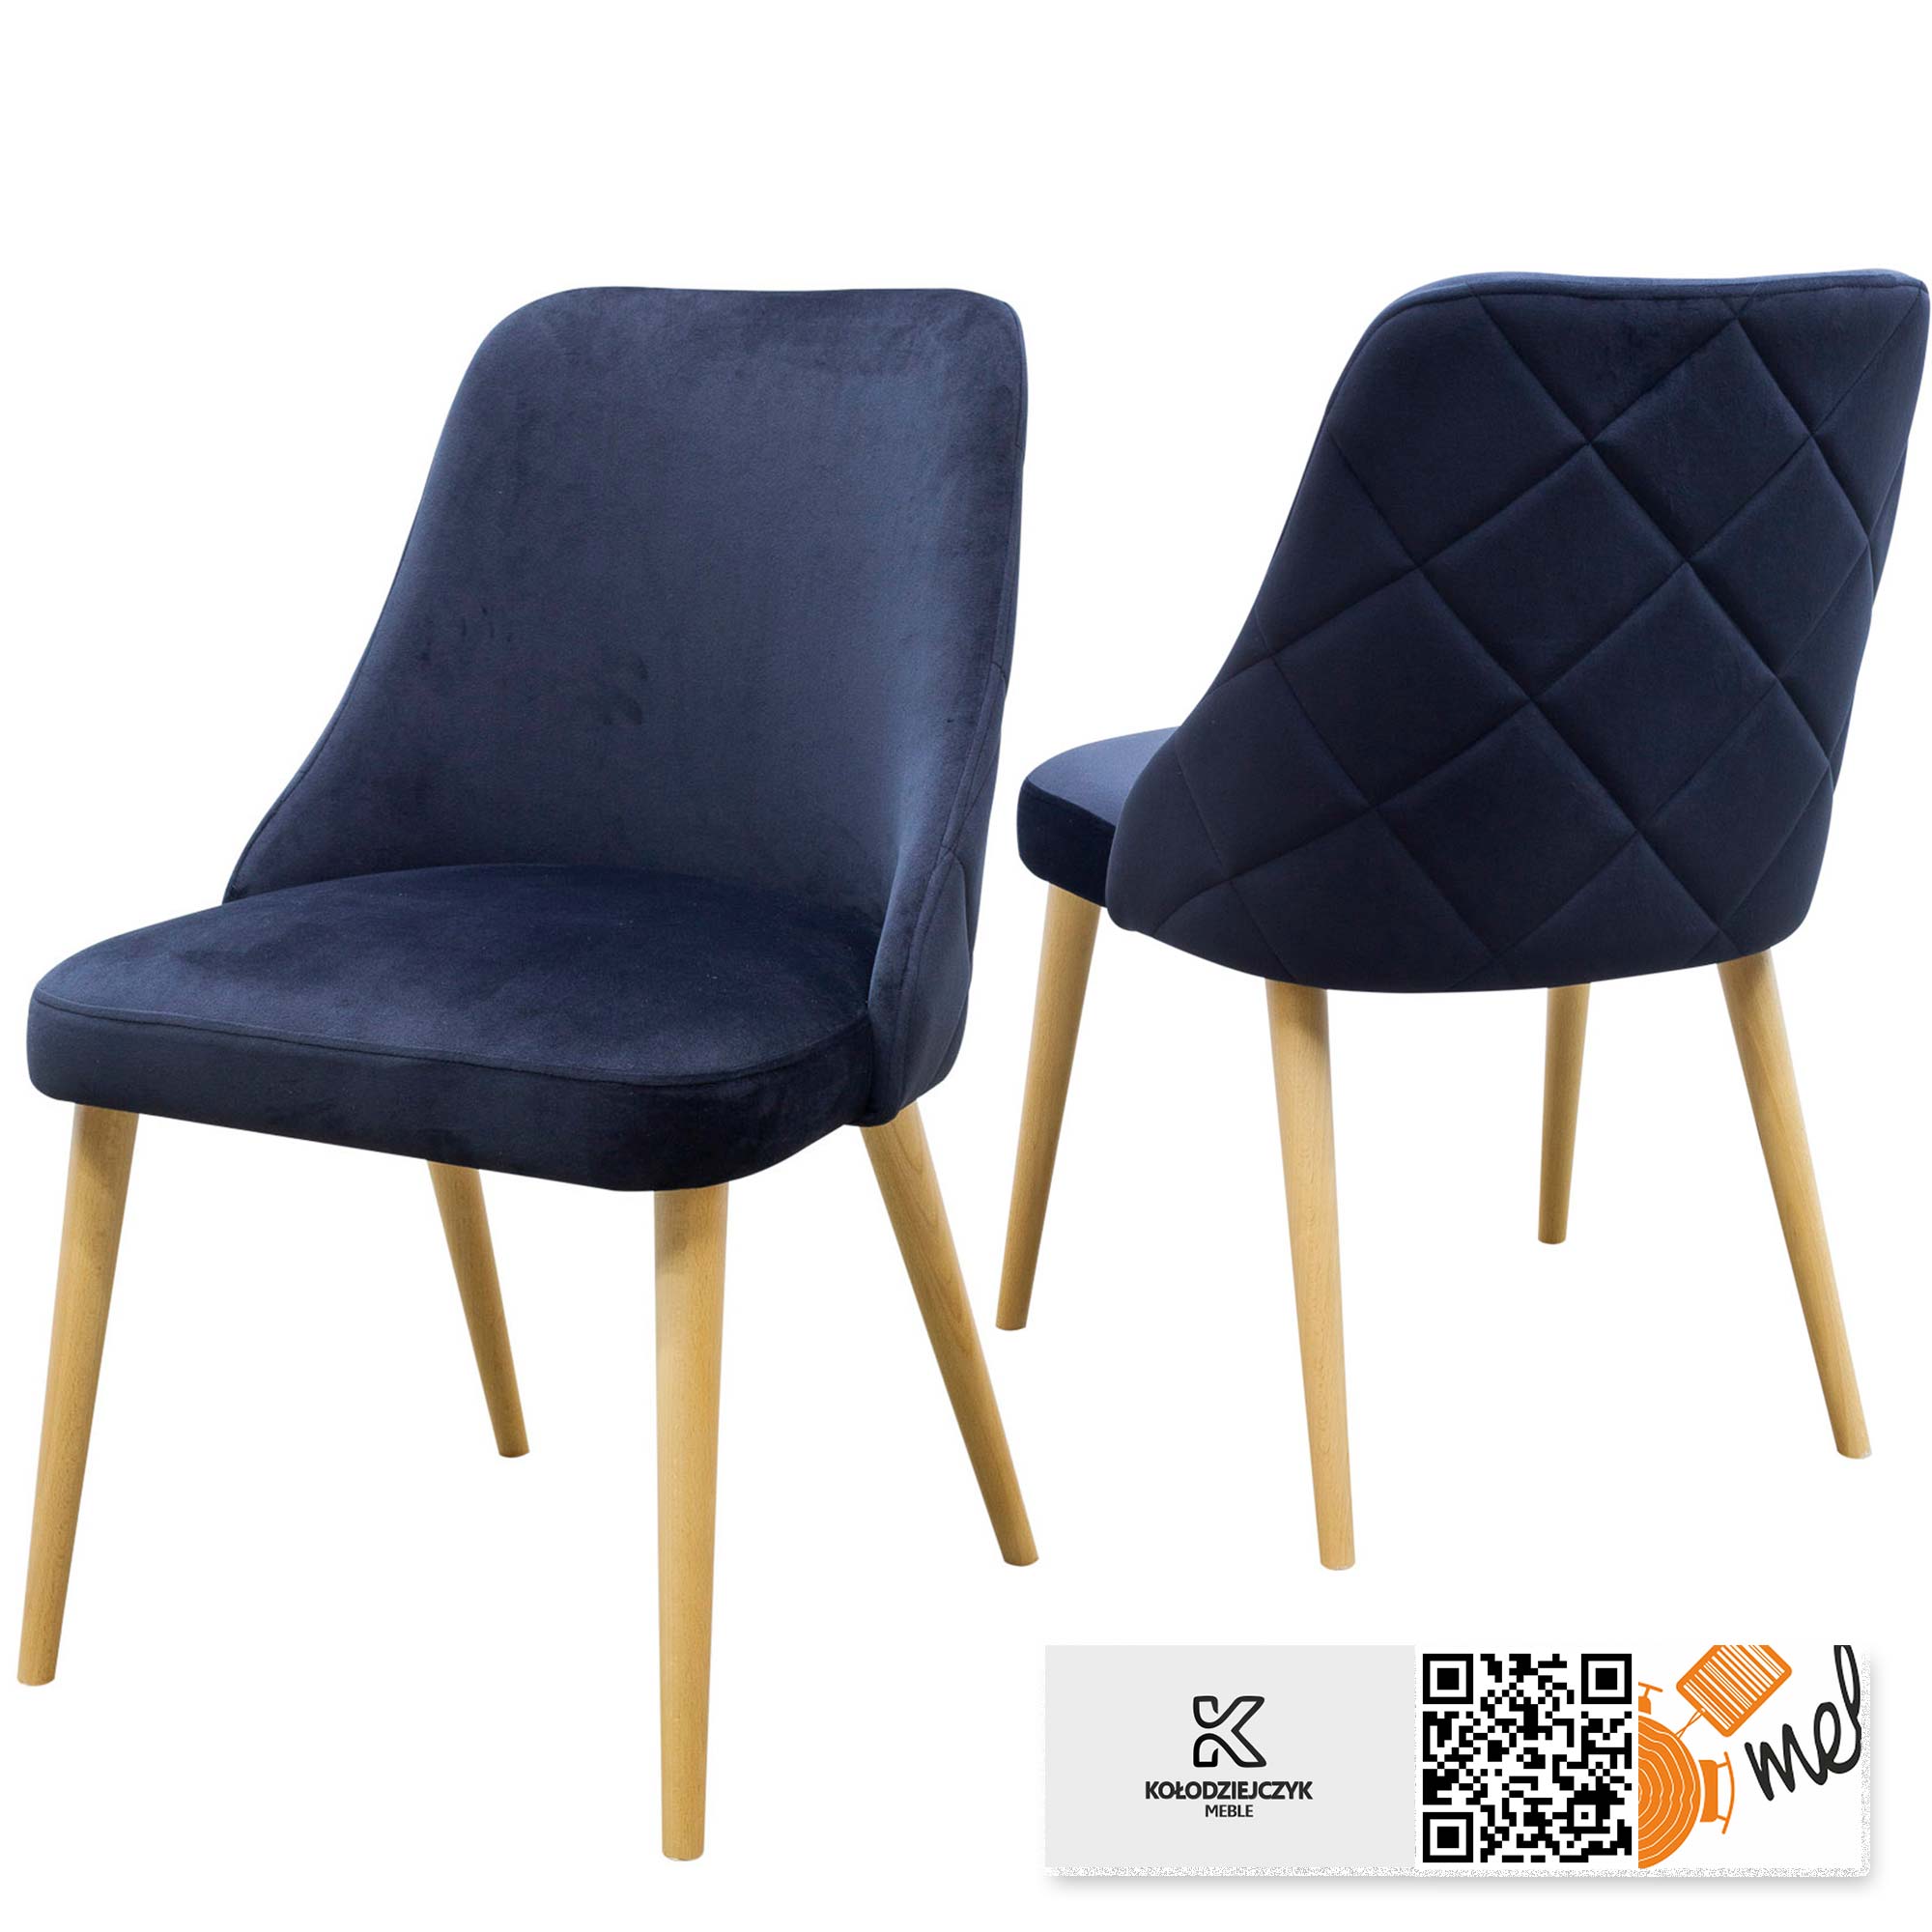 krzeslo k116 nowoczesne tapicerowane nogi patyki do salonu